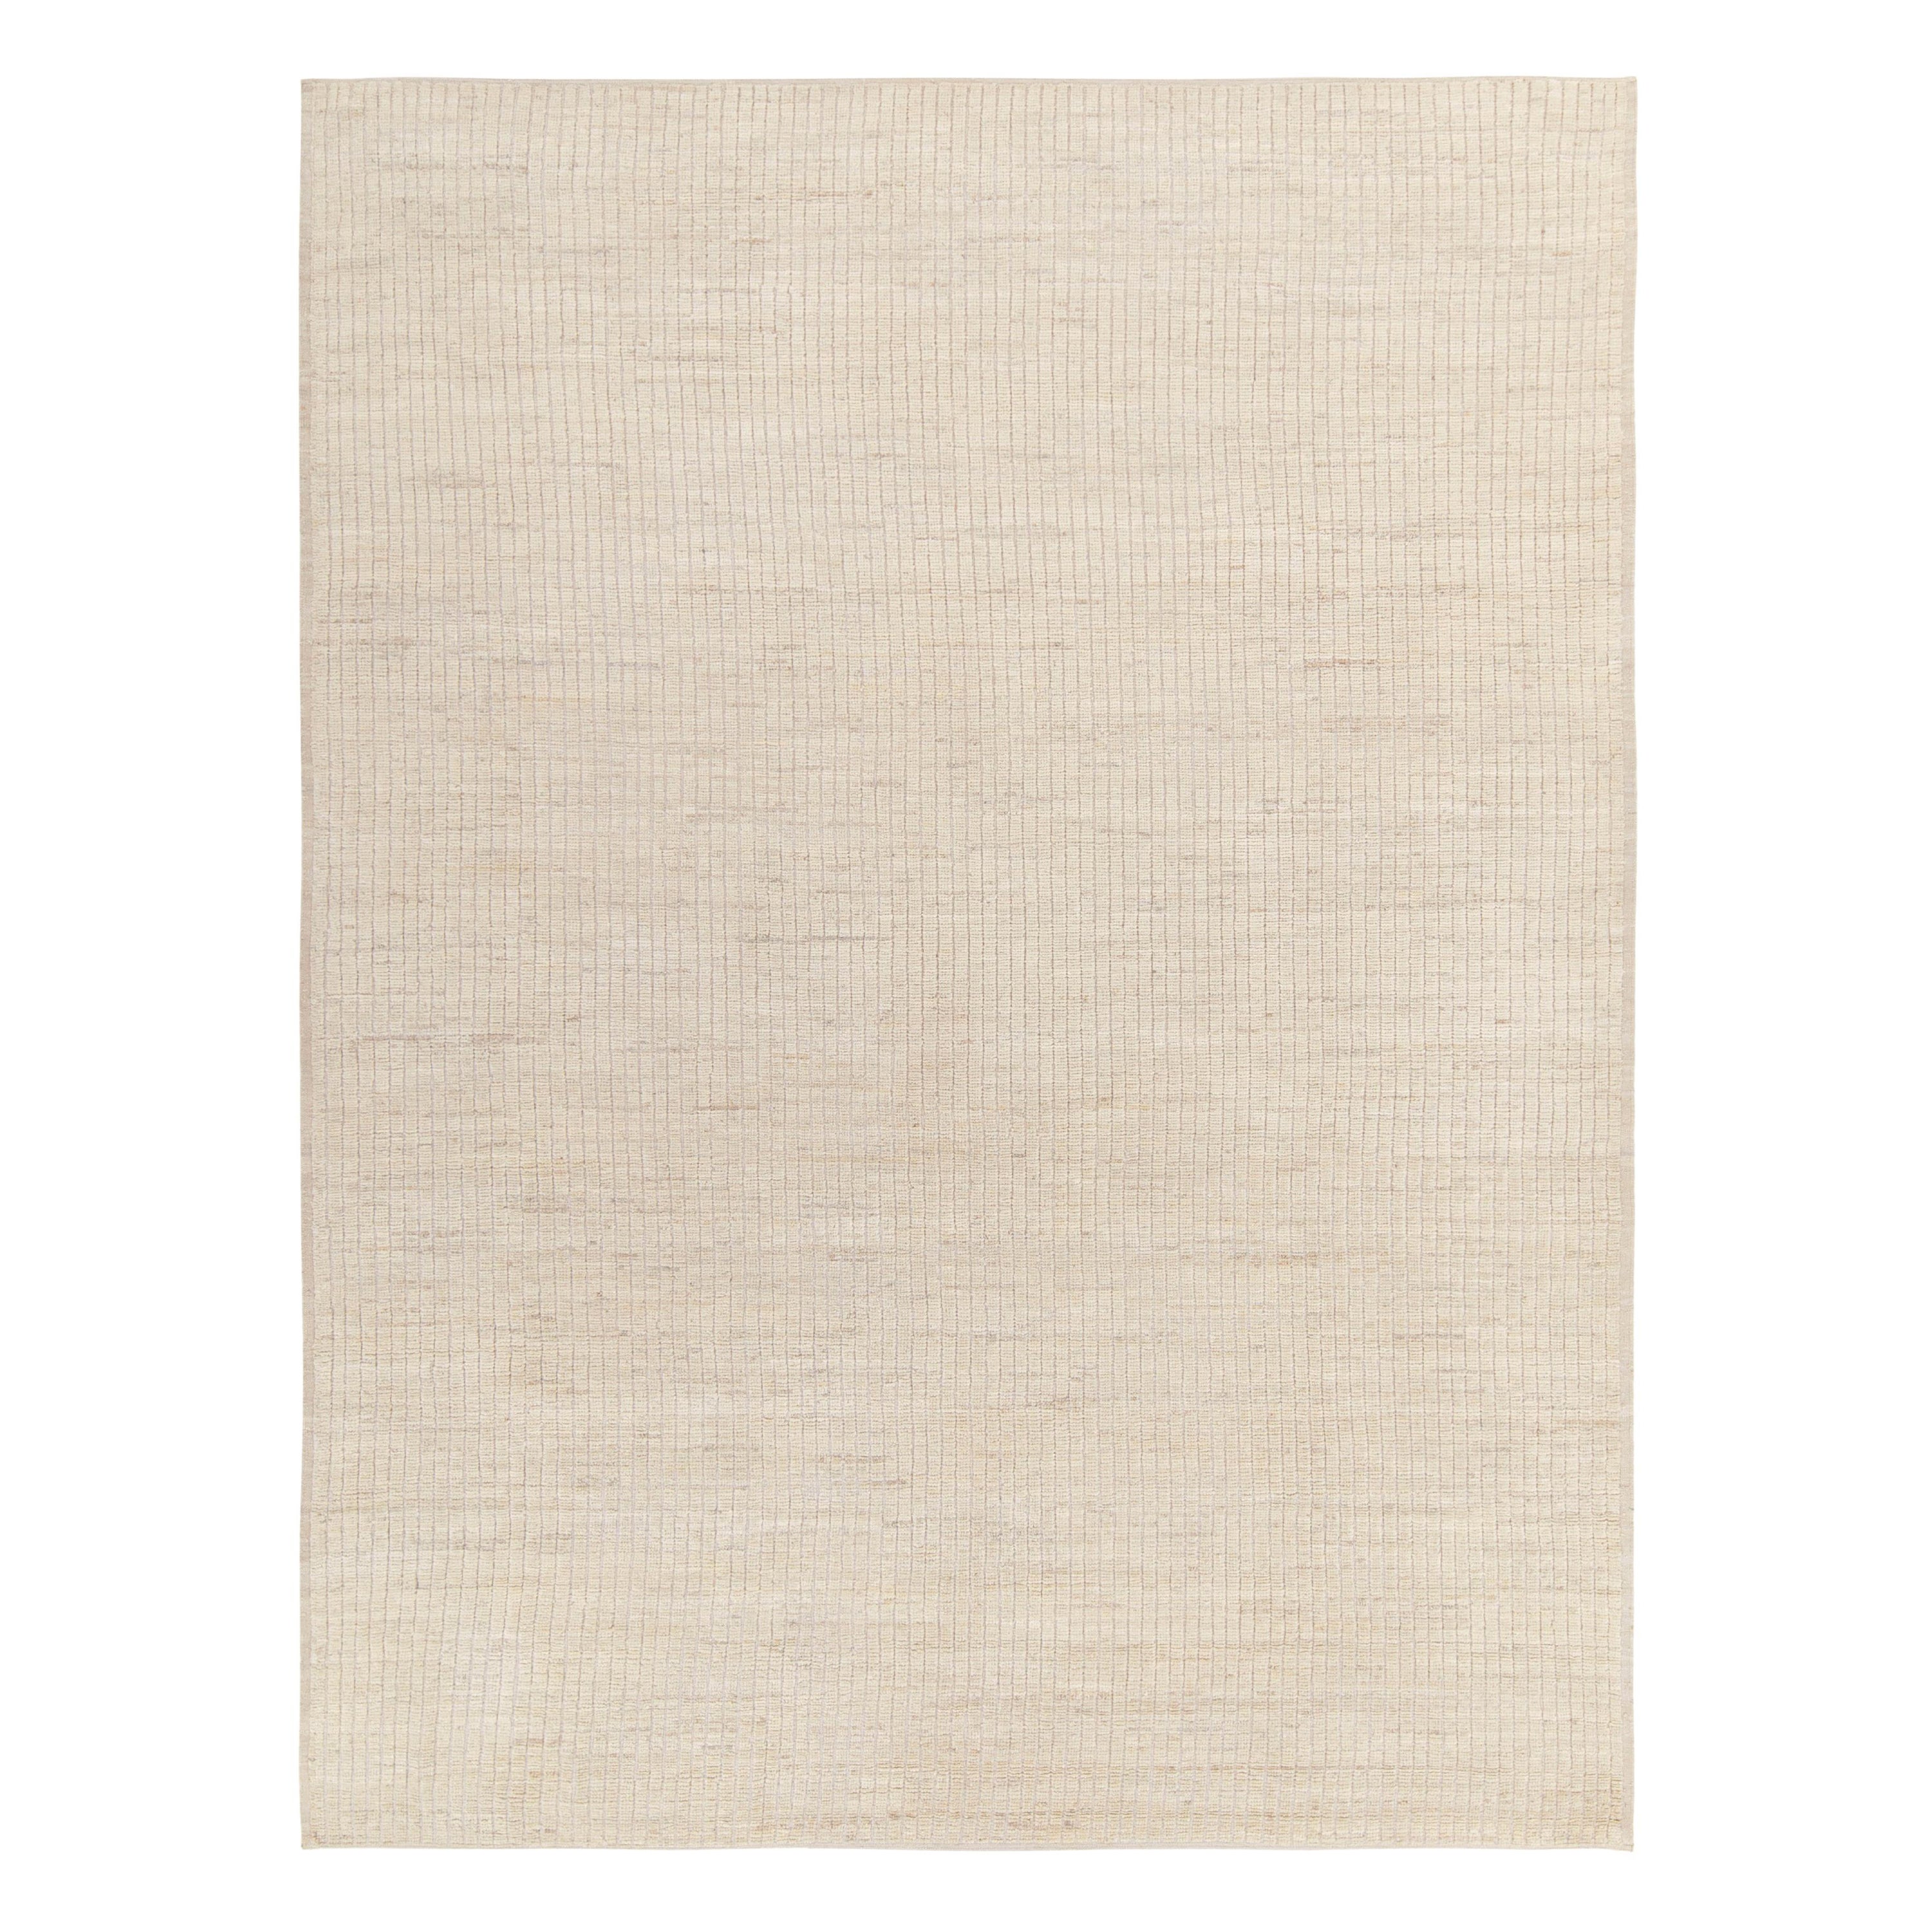 Rug & Kilim's Contemporary Rug in off White, Beige High-Low Geometric Pattern (Tapis contemporain en Off-White, motif géométrique en hauteur)